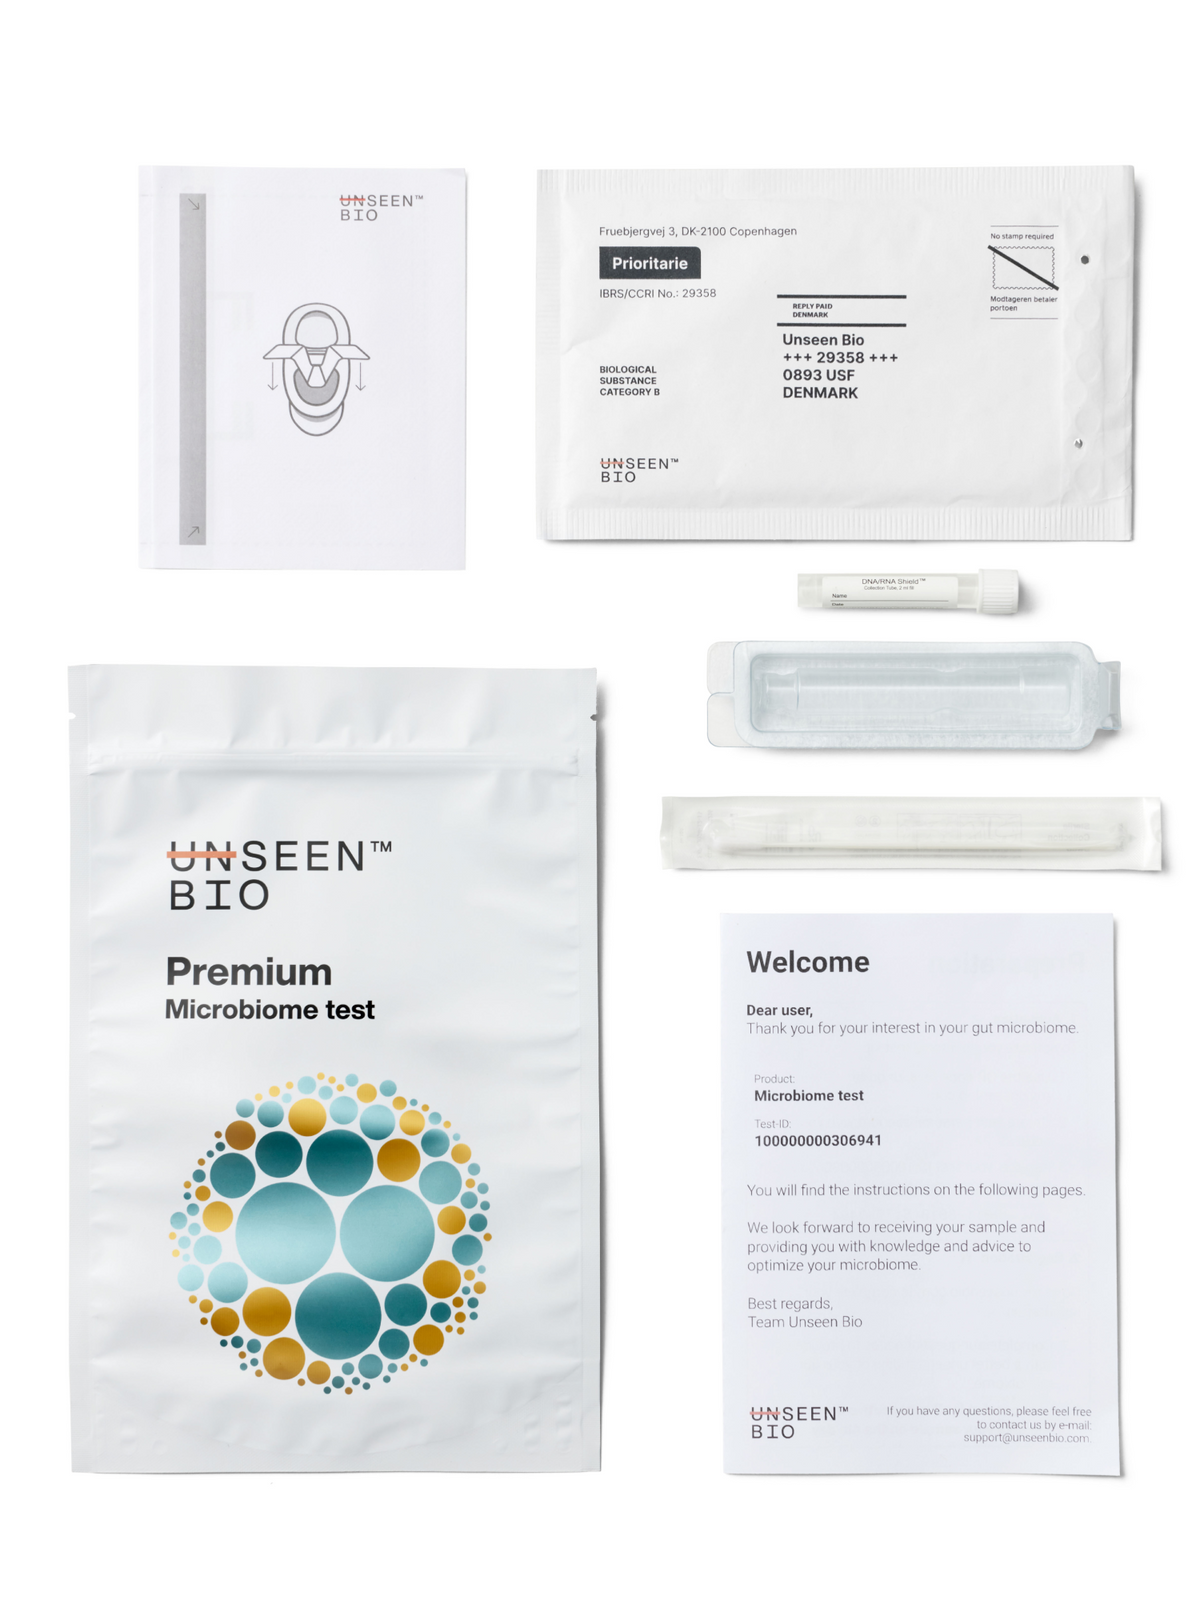 Premium - Microbiome test